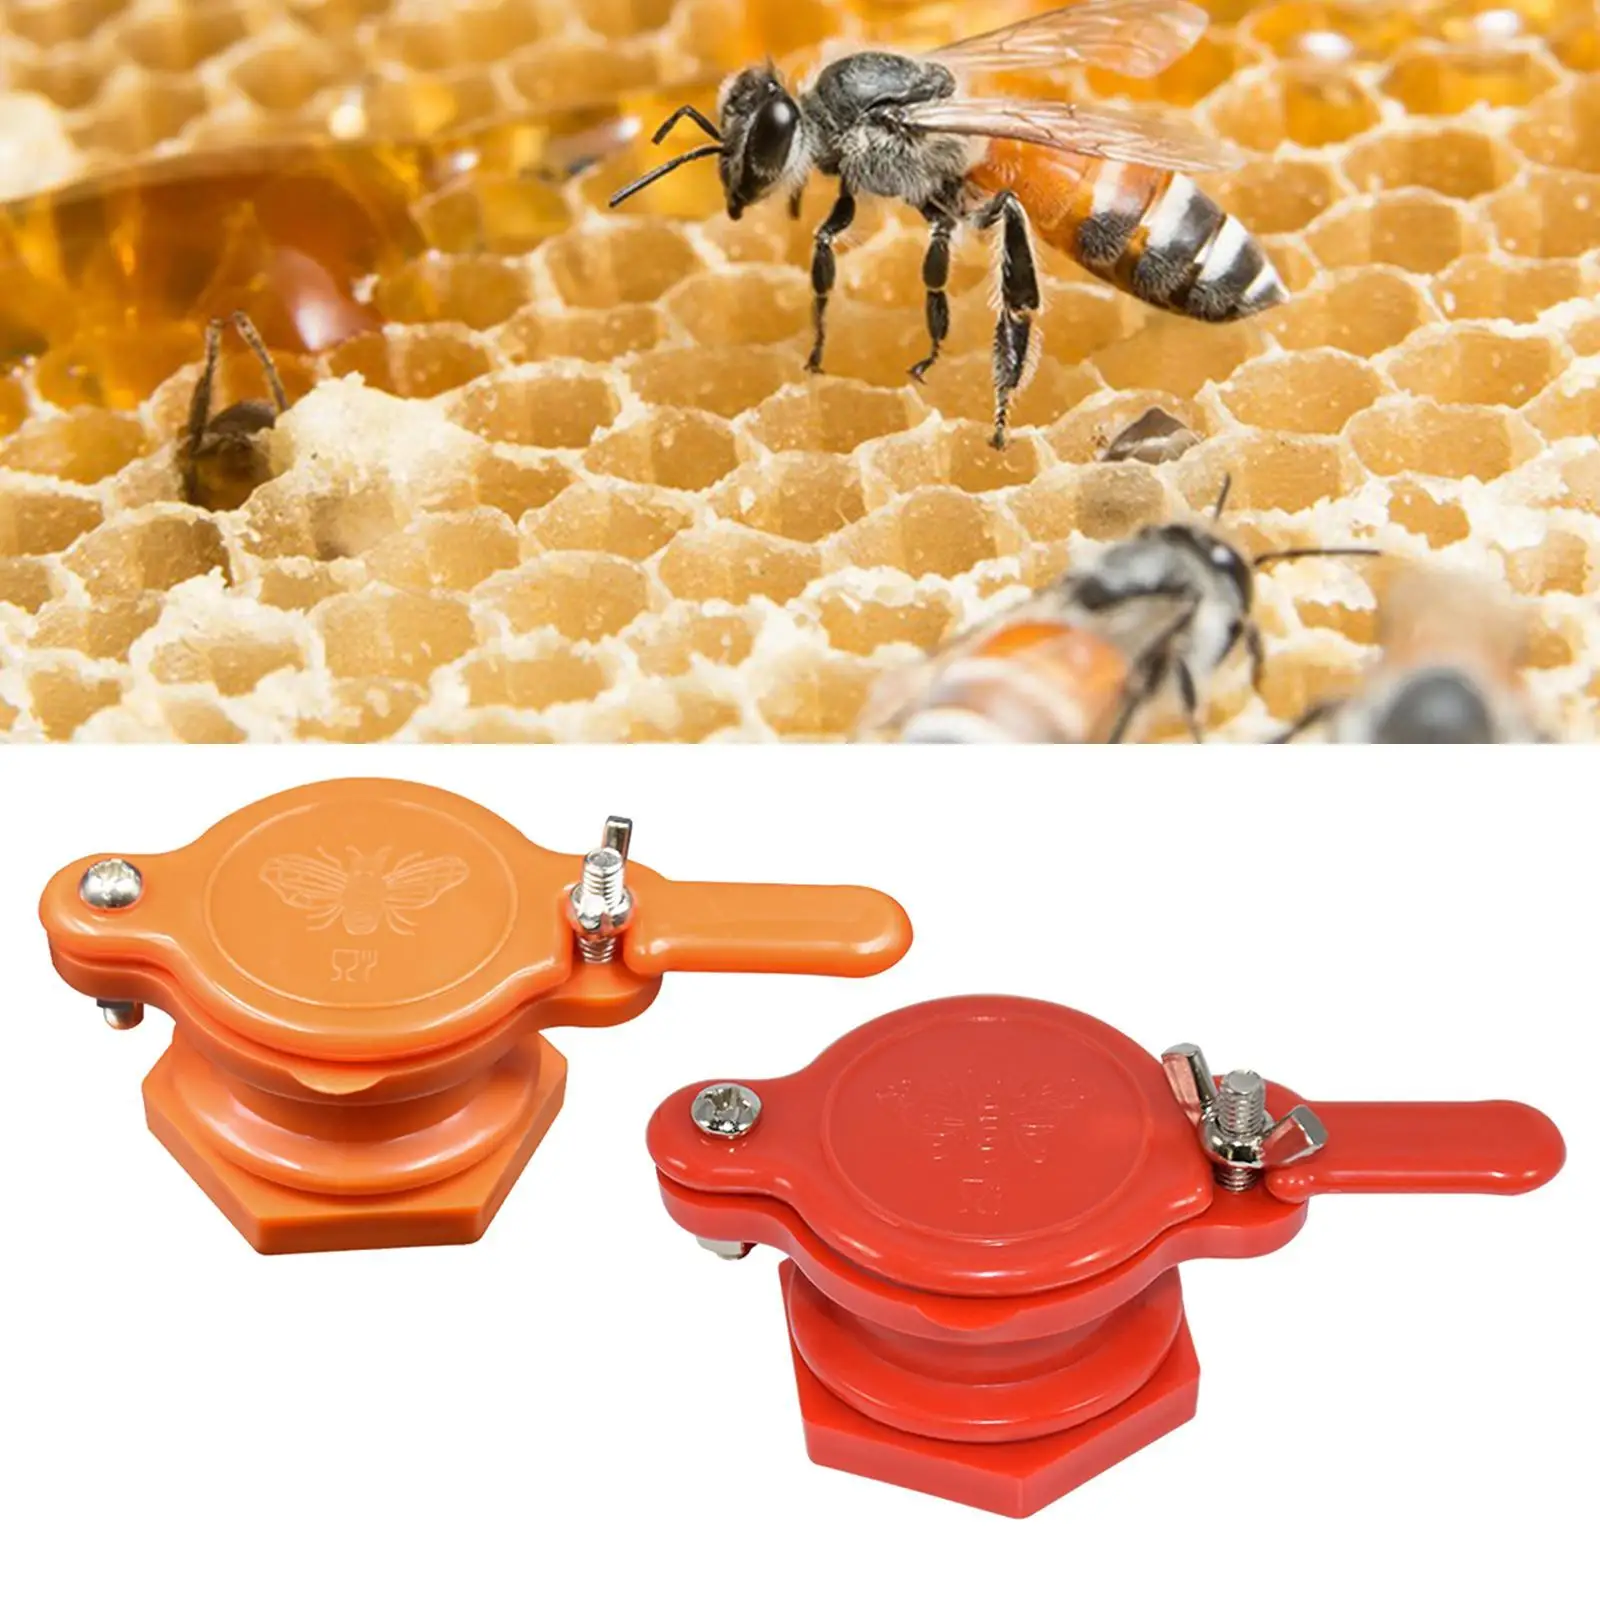  Gate Valve  Extractor Tap Equipment Beekeeping Supplies for Beekeeper